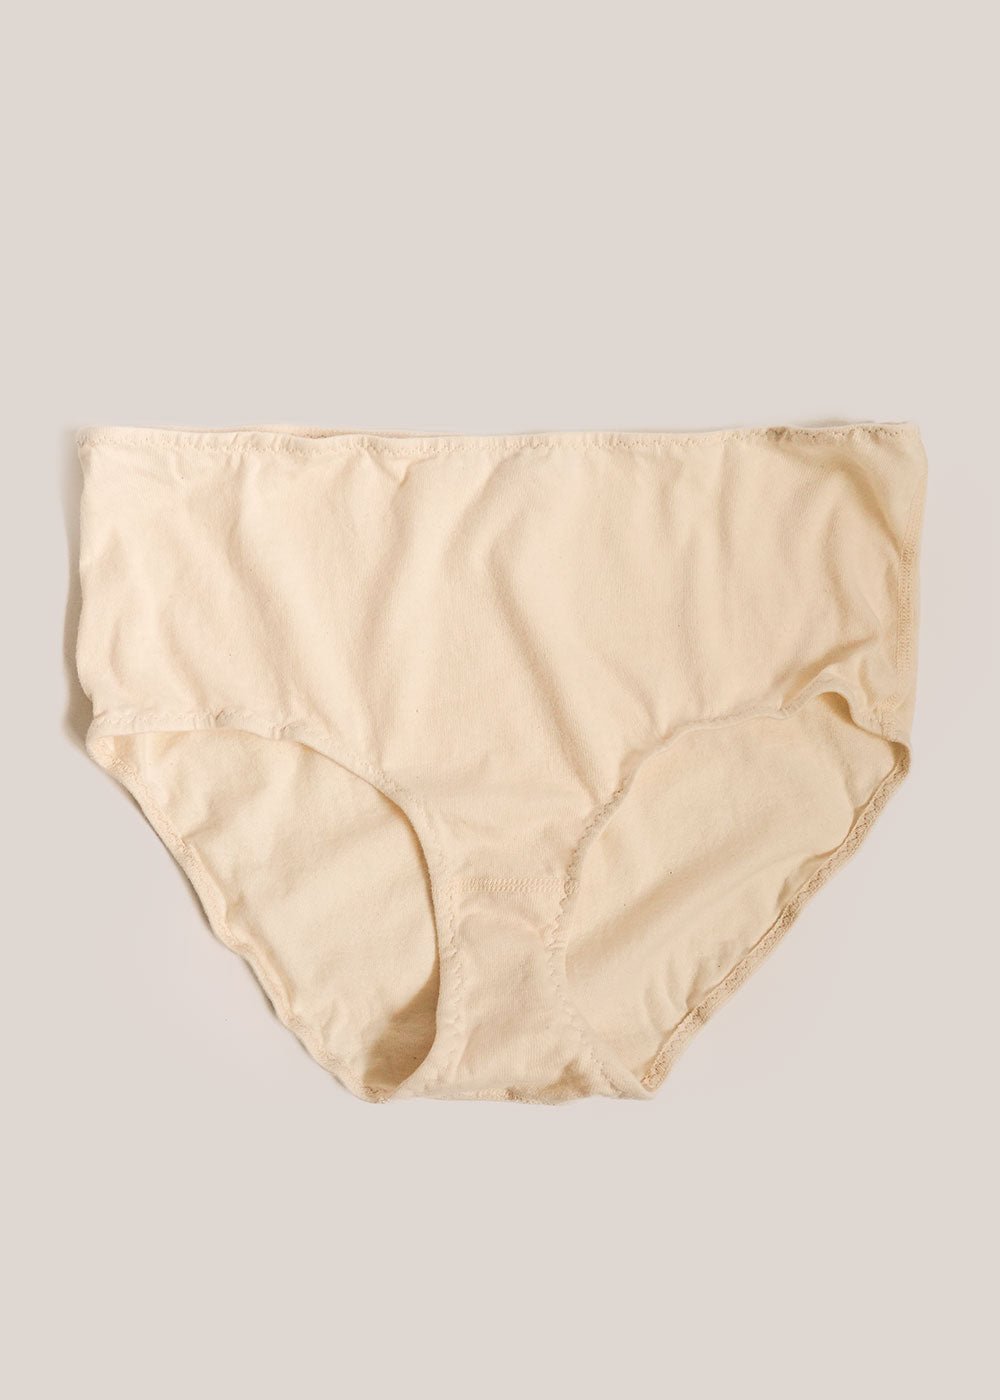 HUPOM Organic Cotton Underwear Womens Underwear High Waist Leisure